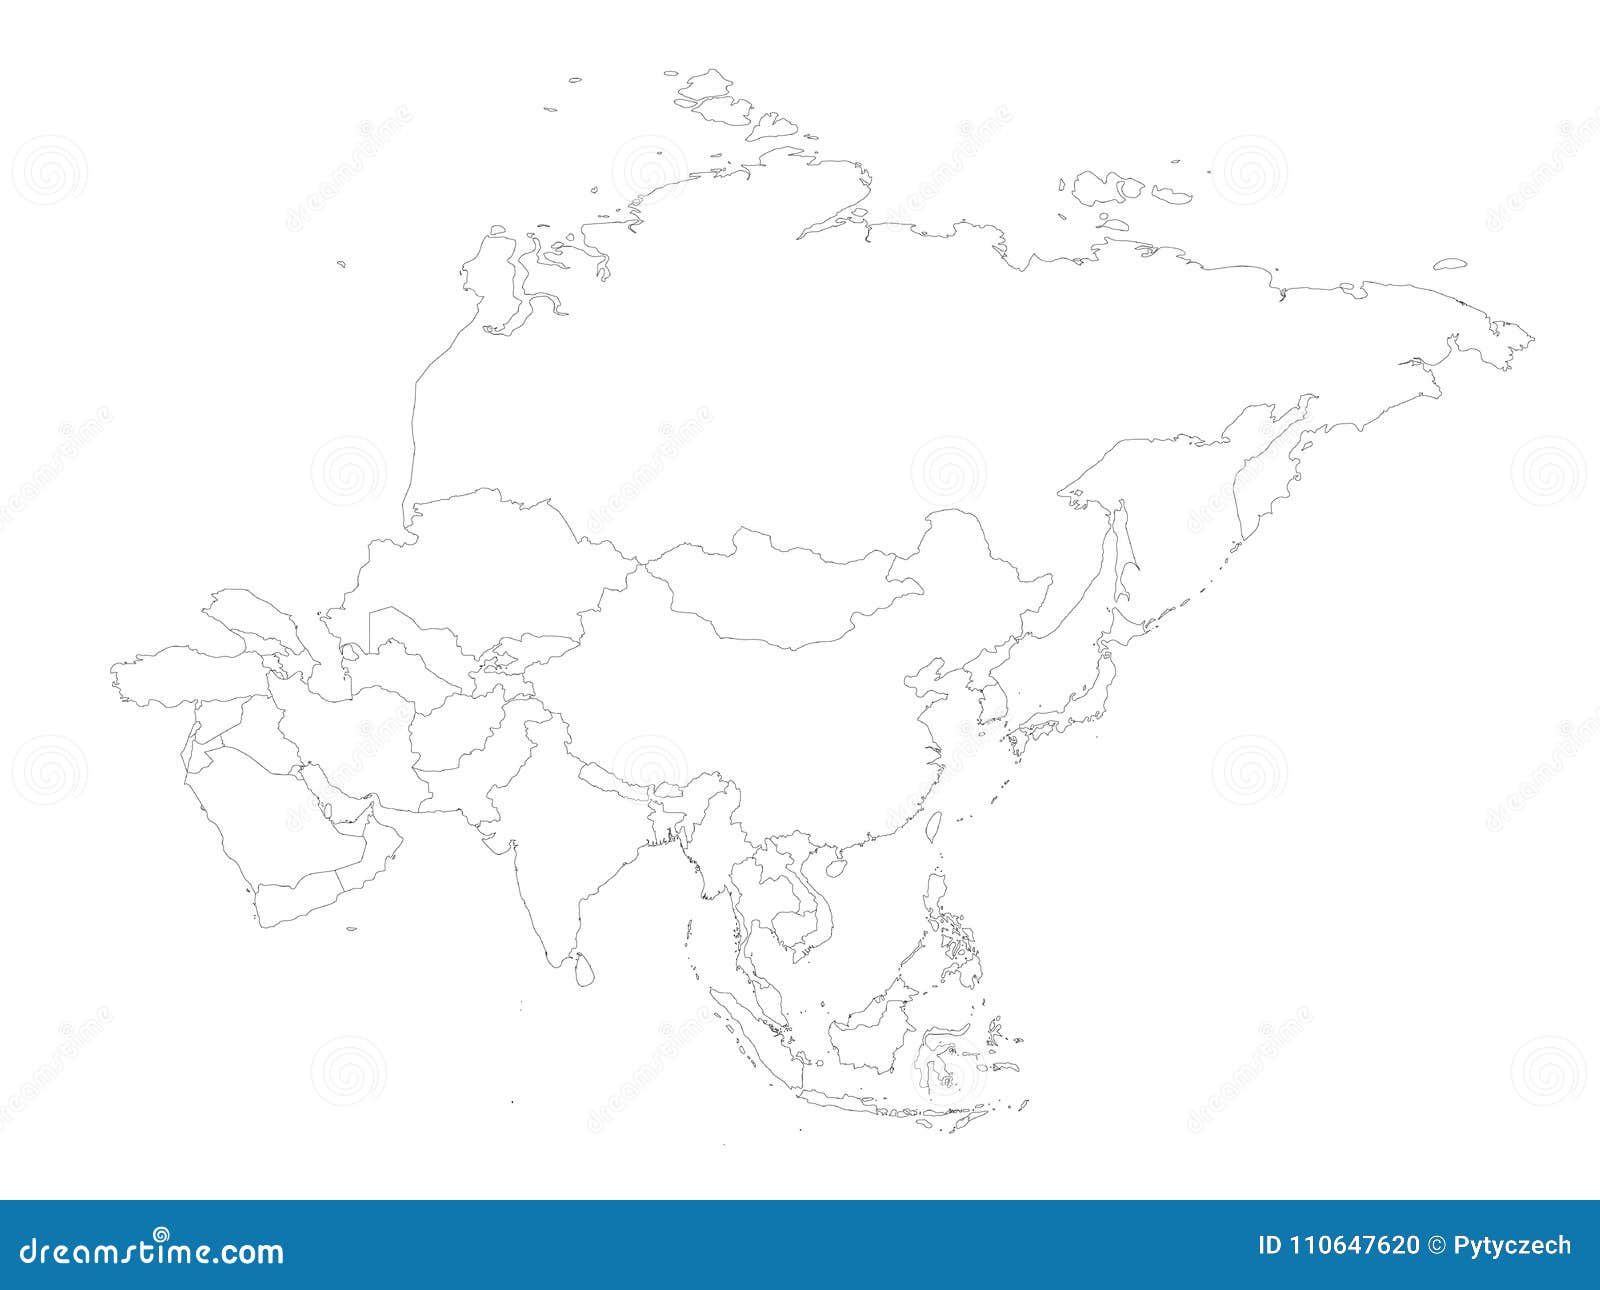 Контурная карта зарубежной Азии с границами государств